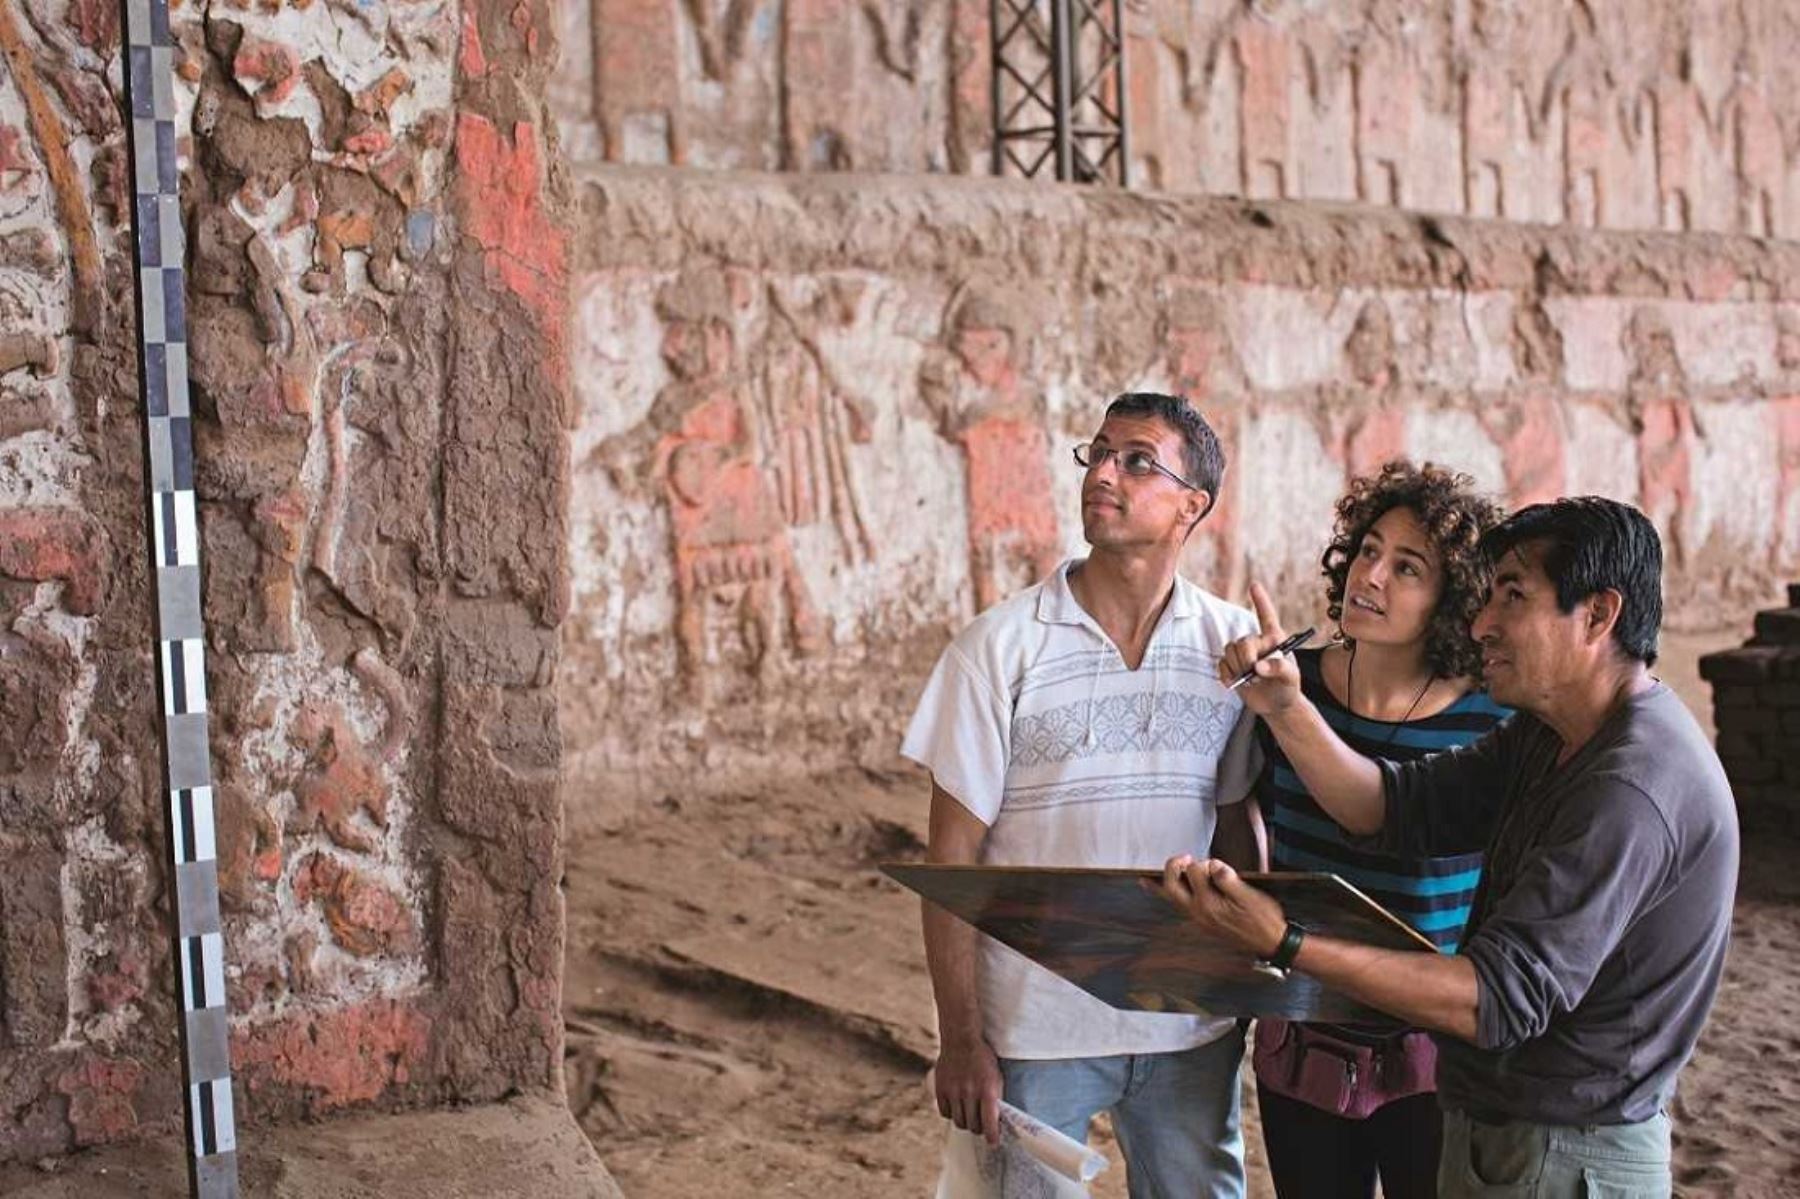 La Huaca de la Luna conserva interesantes pinturas murales de 5 colores (blanco, negro, rojo, azul y amarillo) y relieves donde se puede apreciar la divinidad moche llamada Aiapaec o el “dios degollador”.